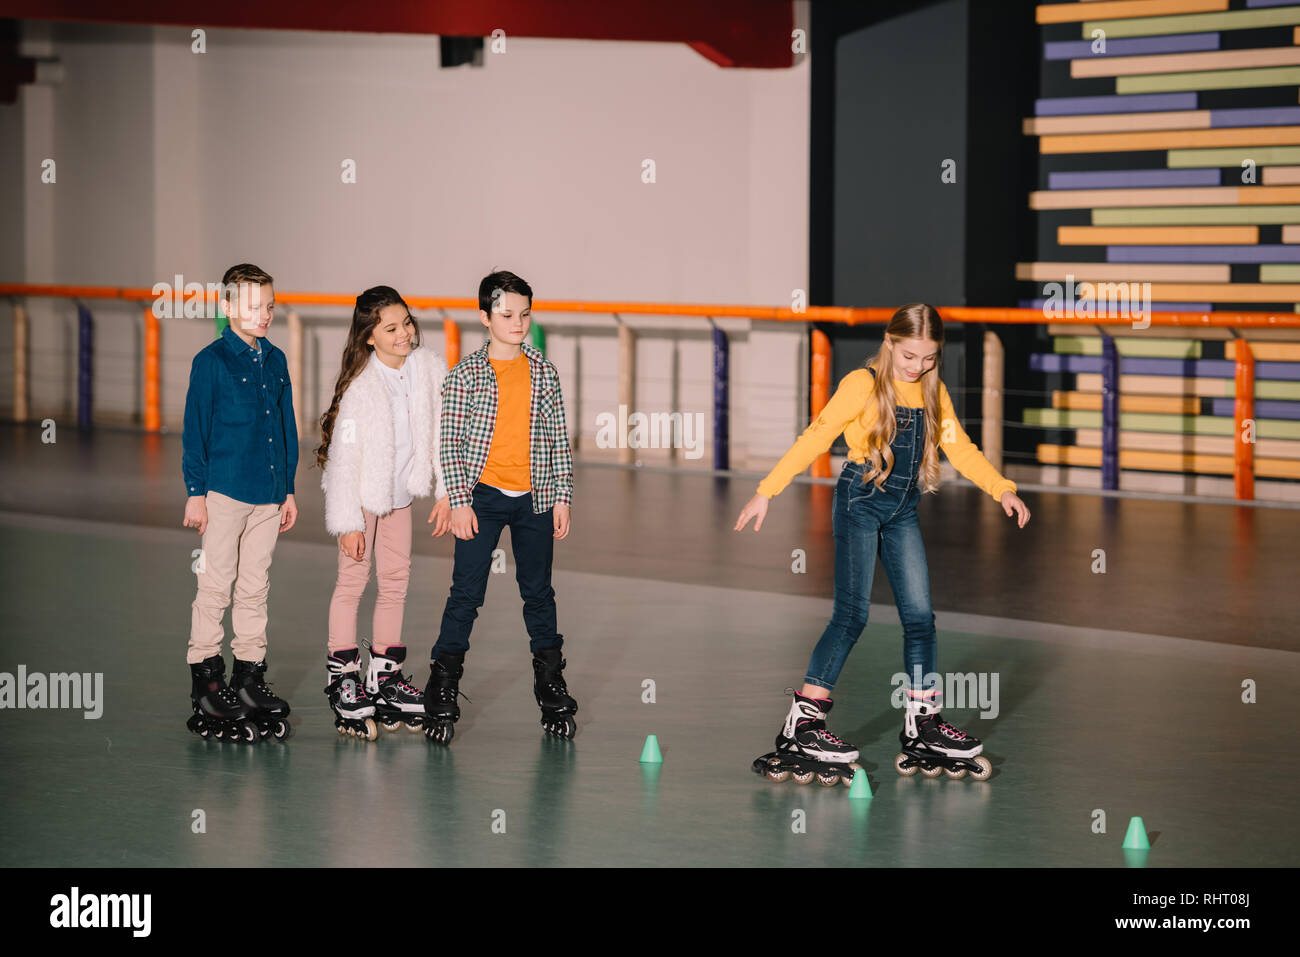 Adorable children skating on roller rink together Stock Photo